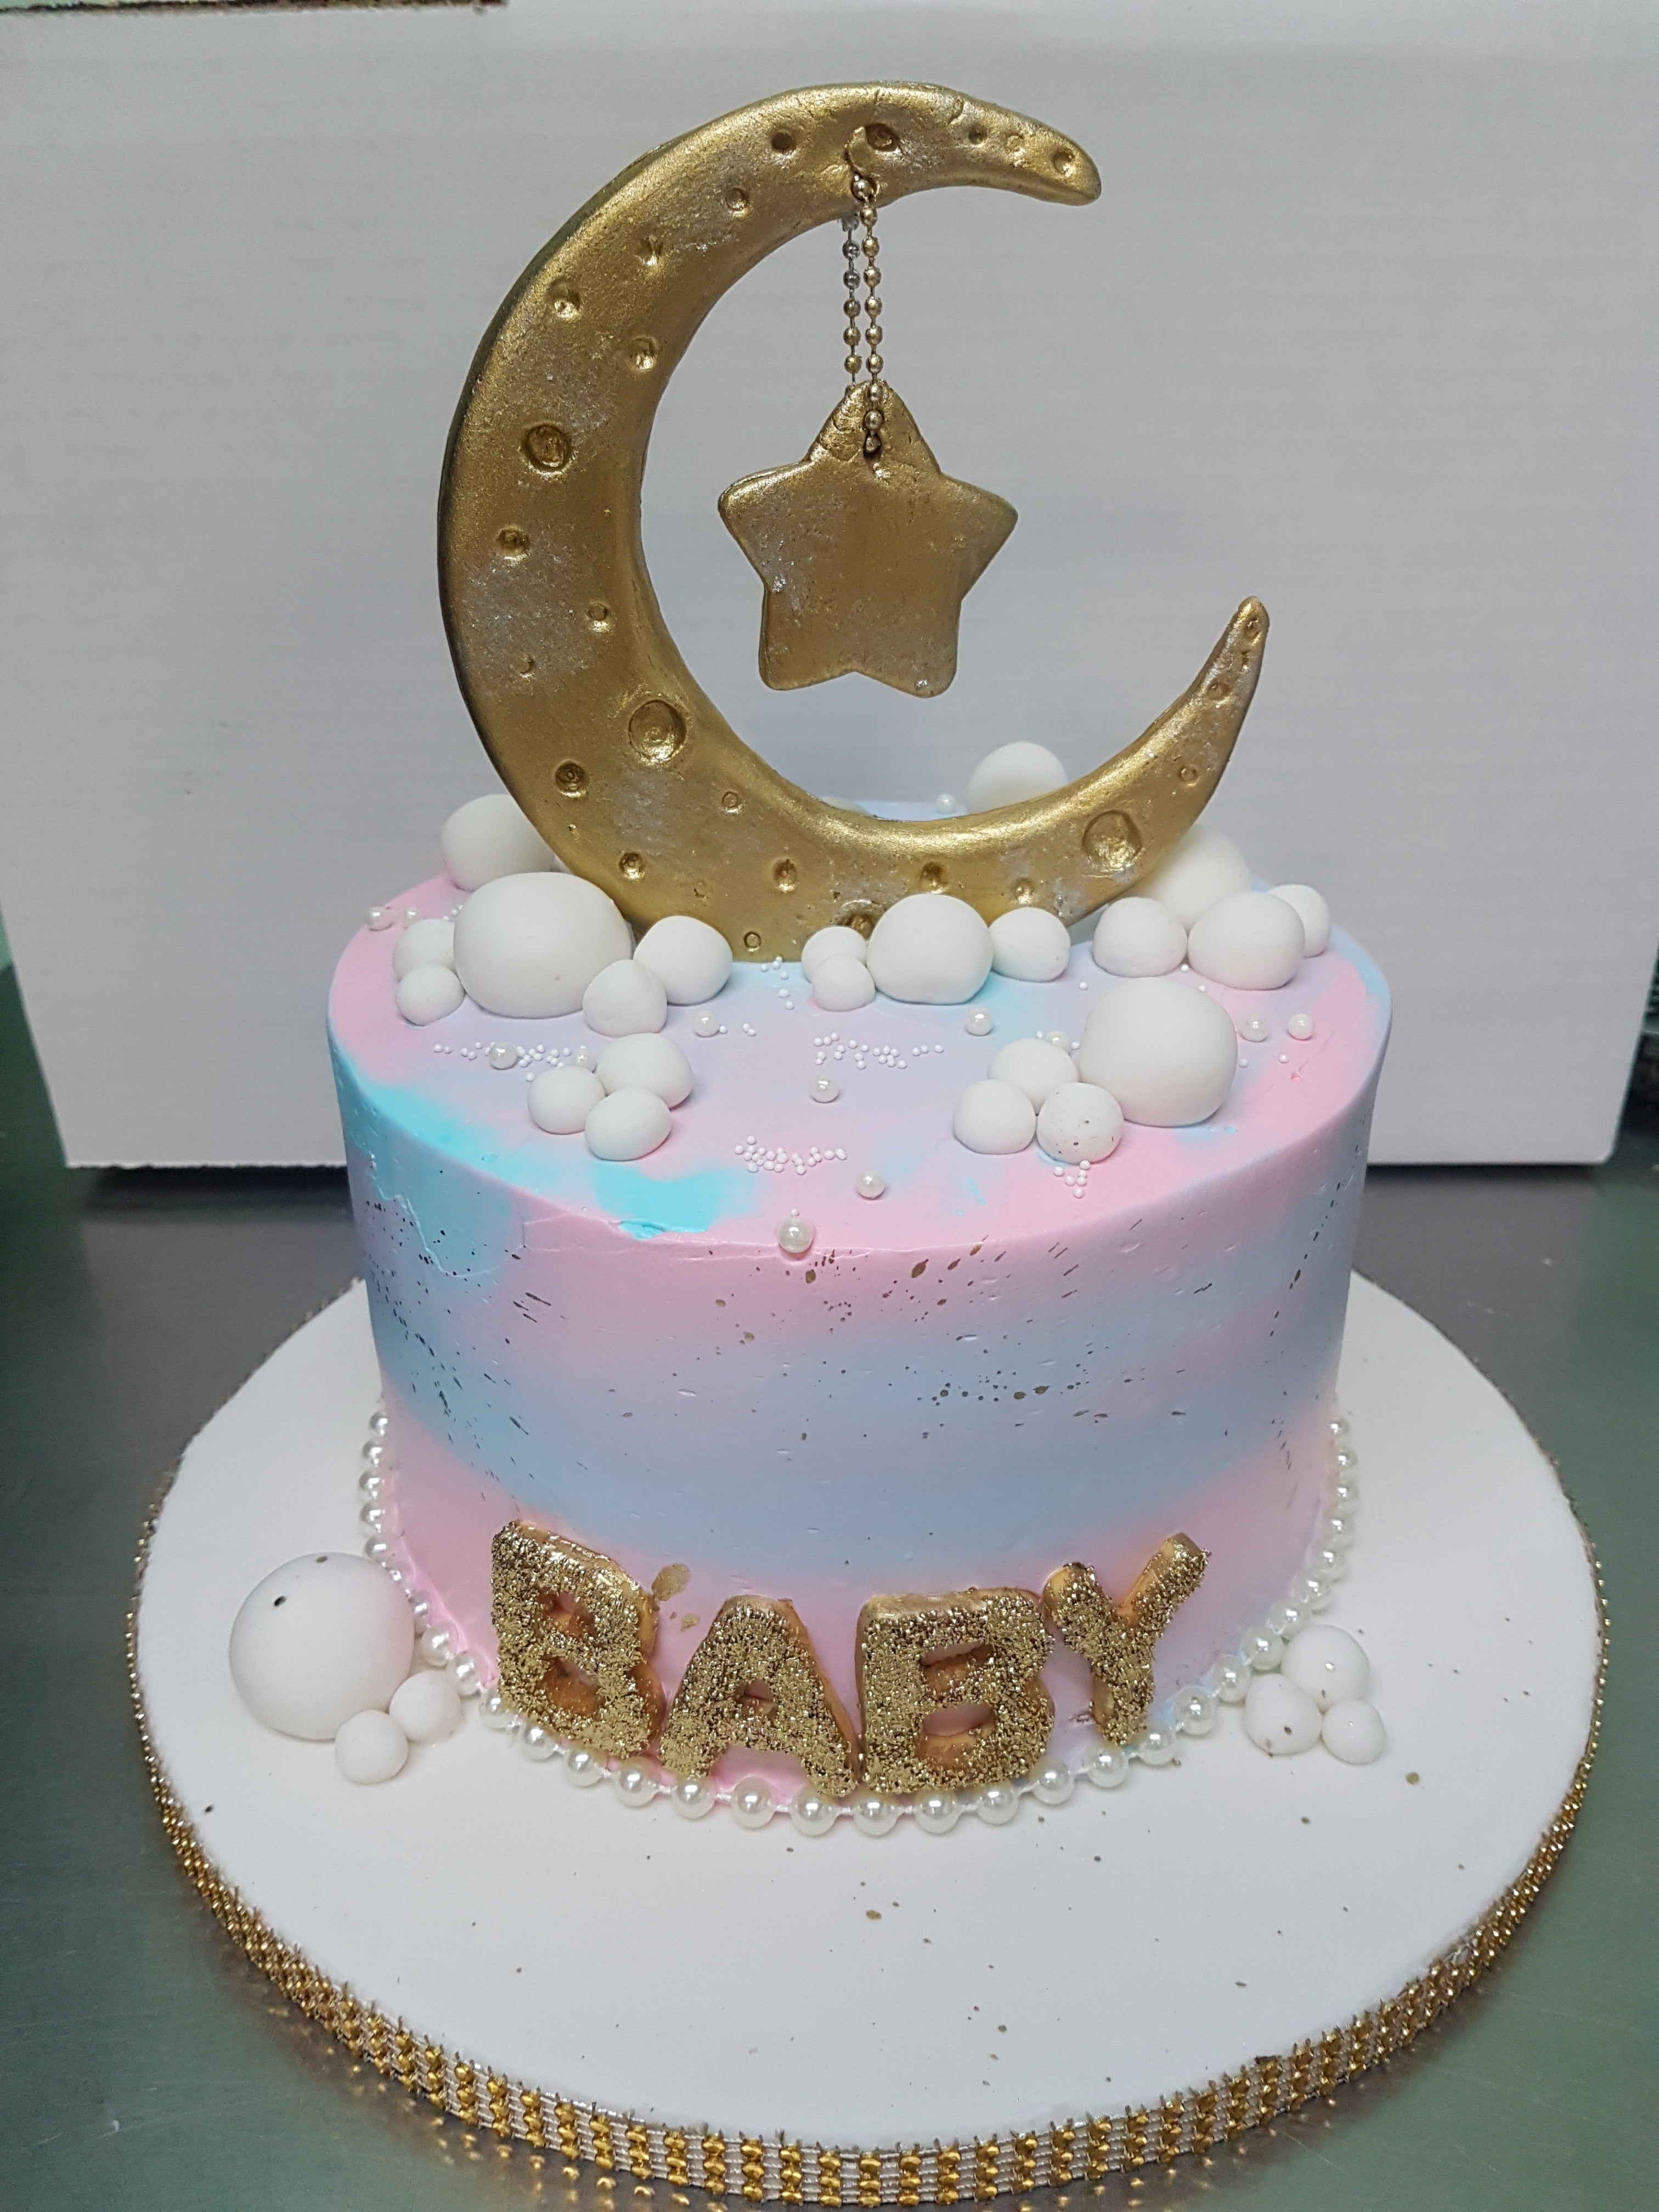 RAJ & HARMINDER Baby Shower Cake - Rashmi's Bakery